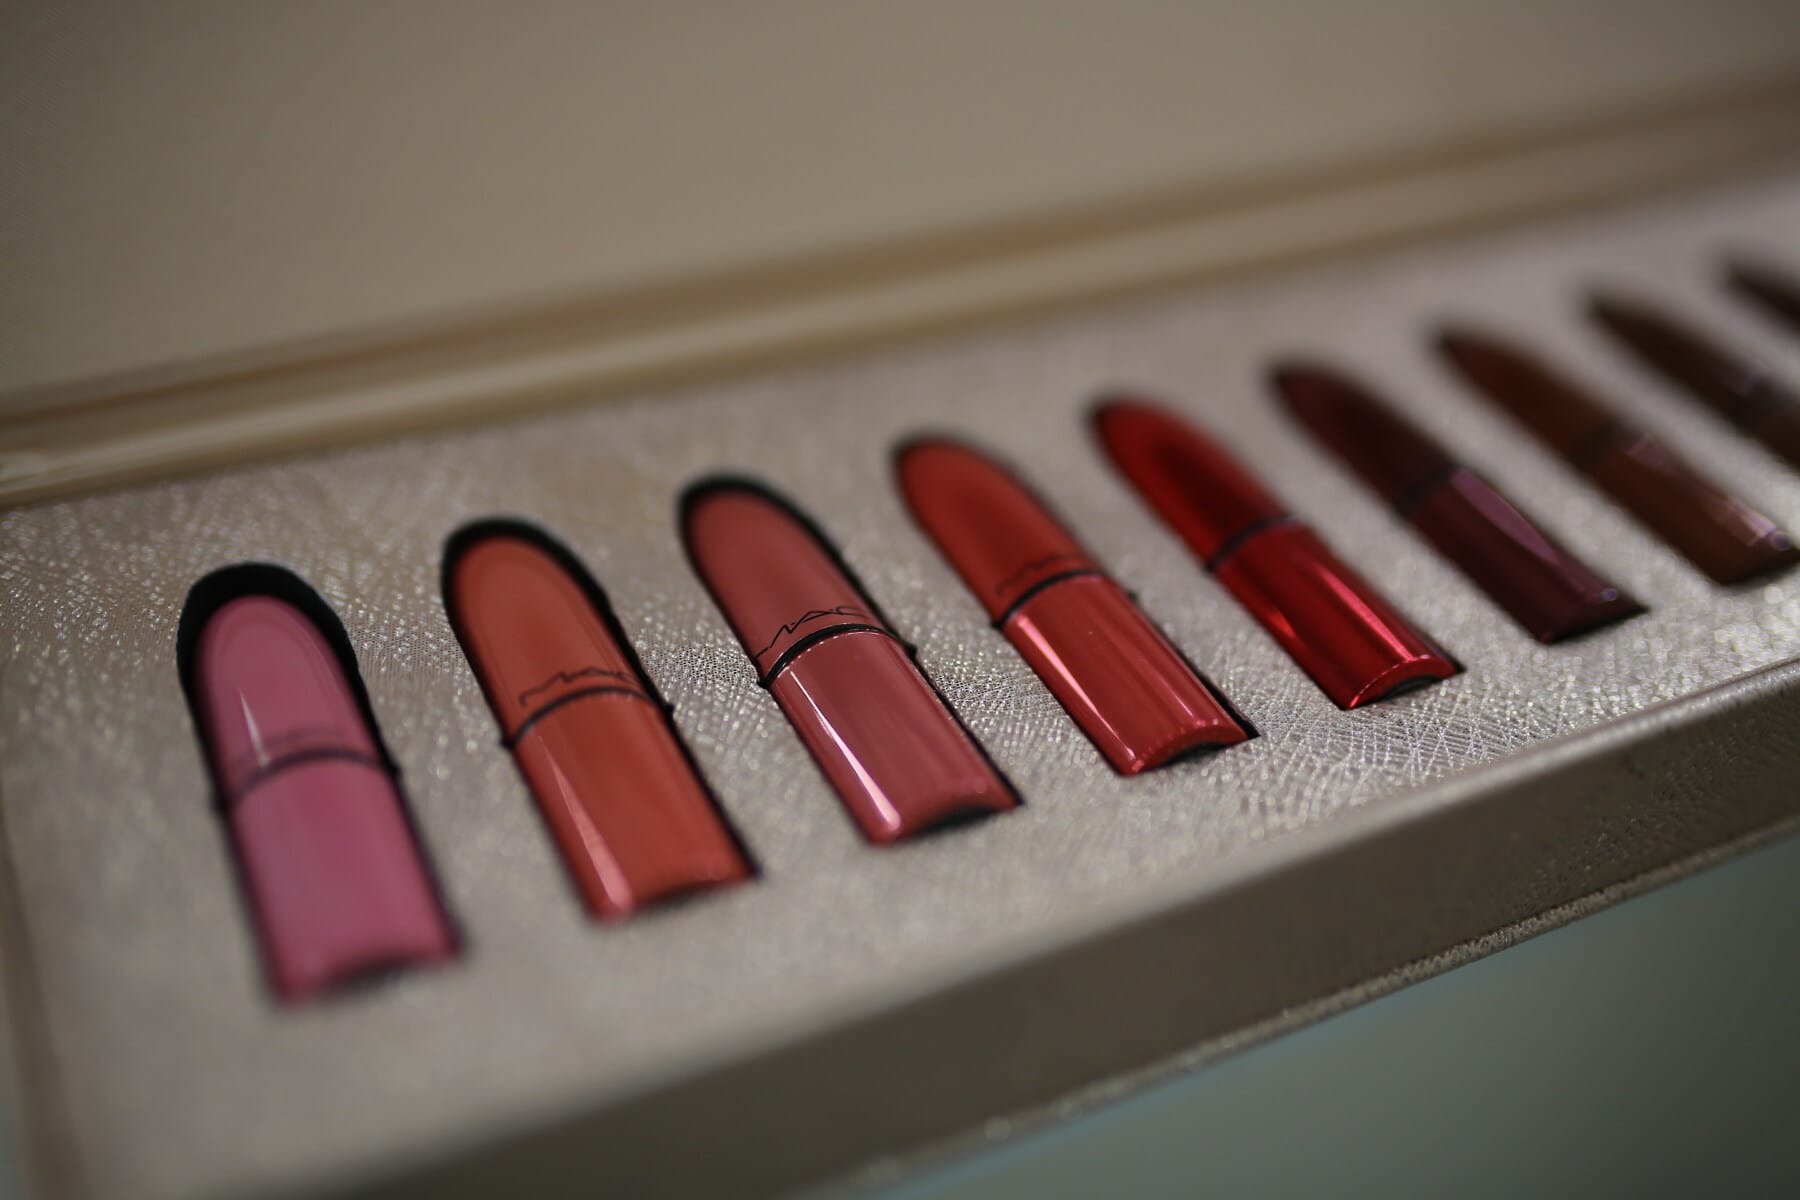 merah, lipstik, profesional, kotak, dandan, warna-warni, warna, warna, studio, merapatkan